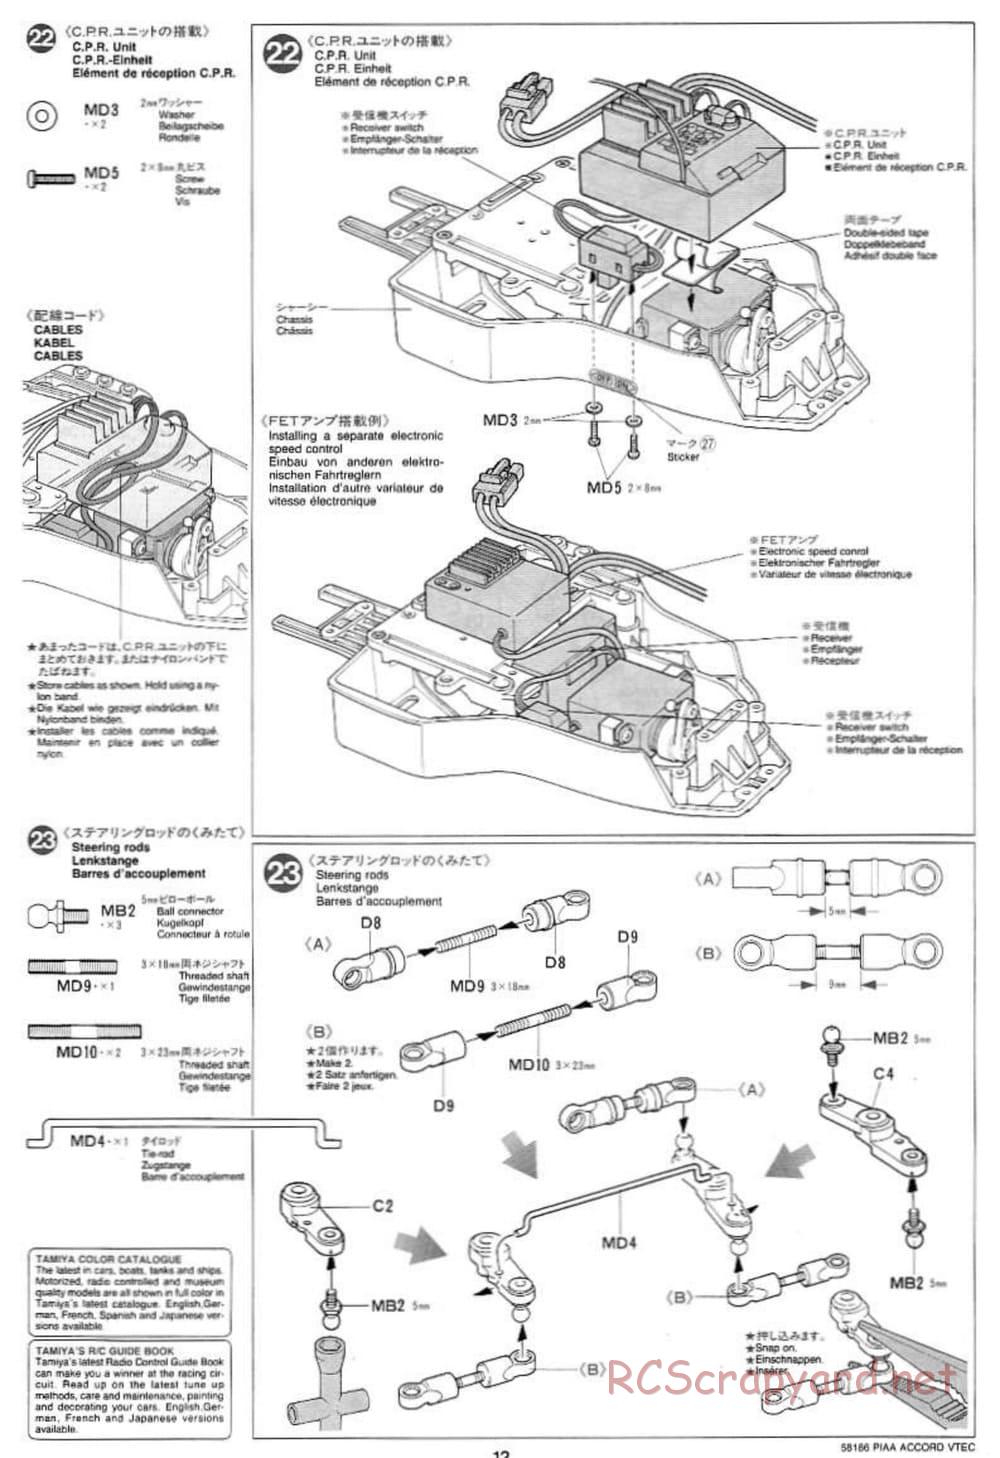 Tamiya - PIAA Accord VTEC - FF-01 Chassis - Manual - Page 12